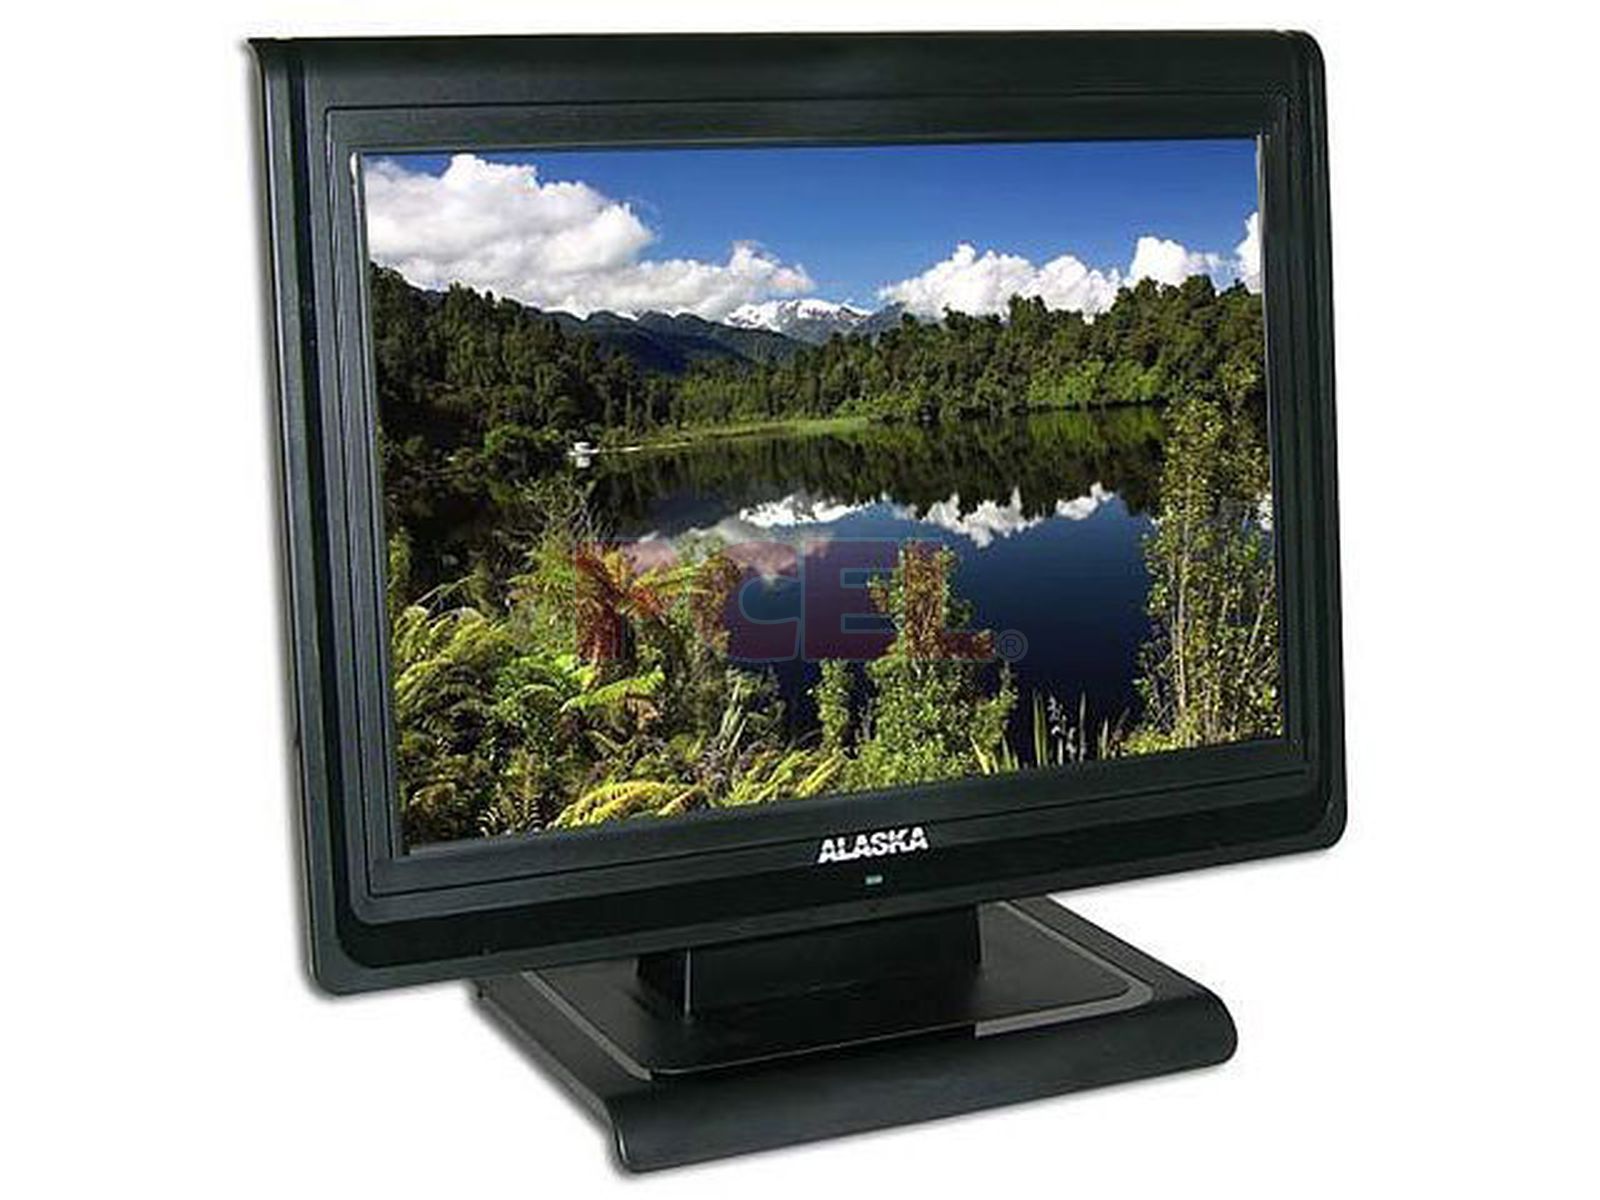 Esperanzado Pack para poner Popa Monitor LCD Alaska de 15" con Bocina, Color Negro